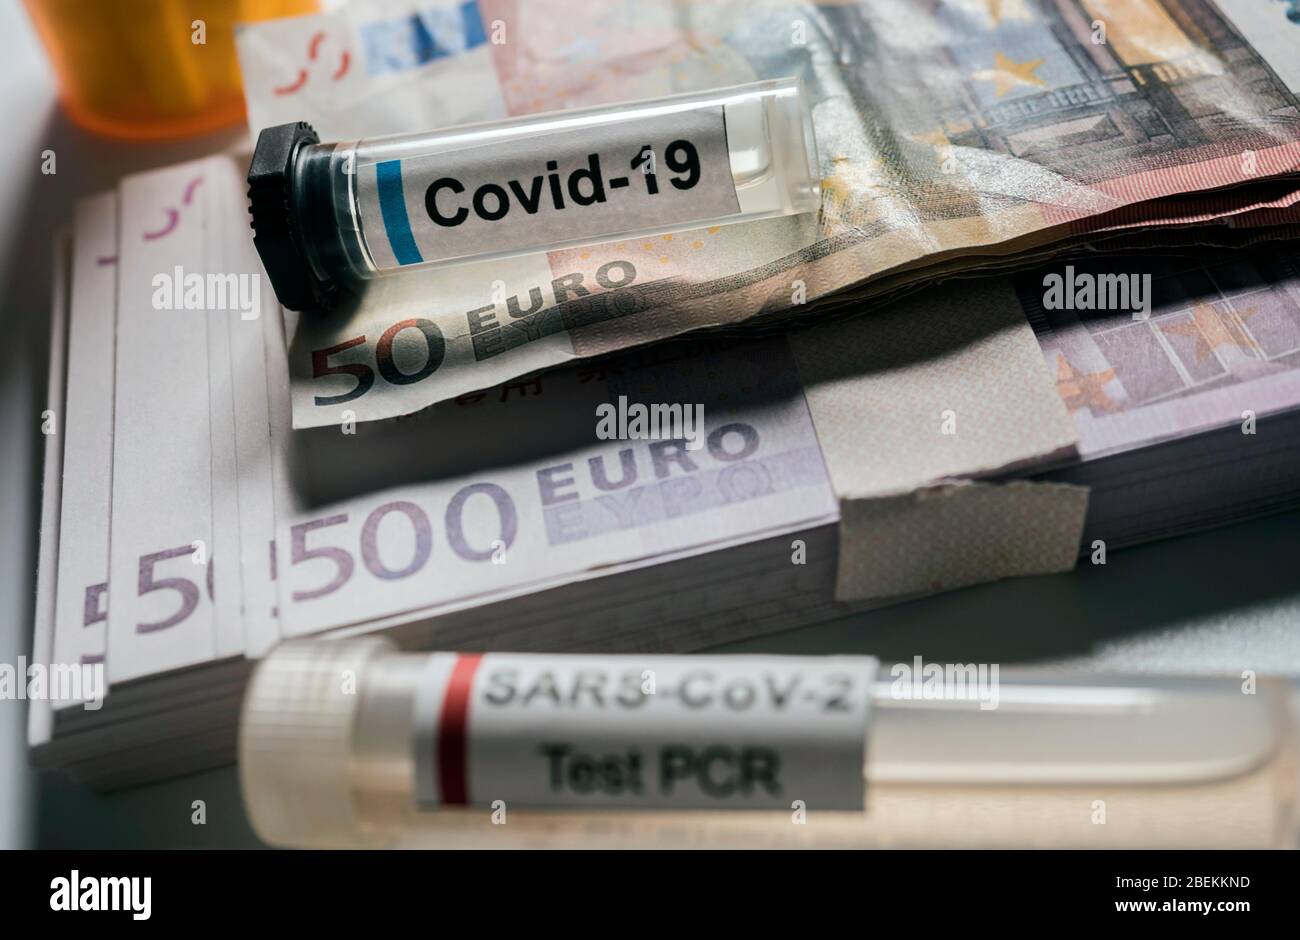 Flaconcino di coronavirus sulle banconote in euro, immagine concettuale Foto Stock